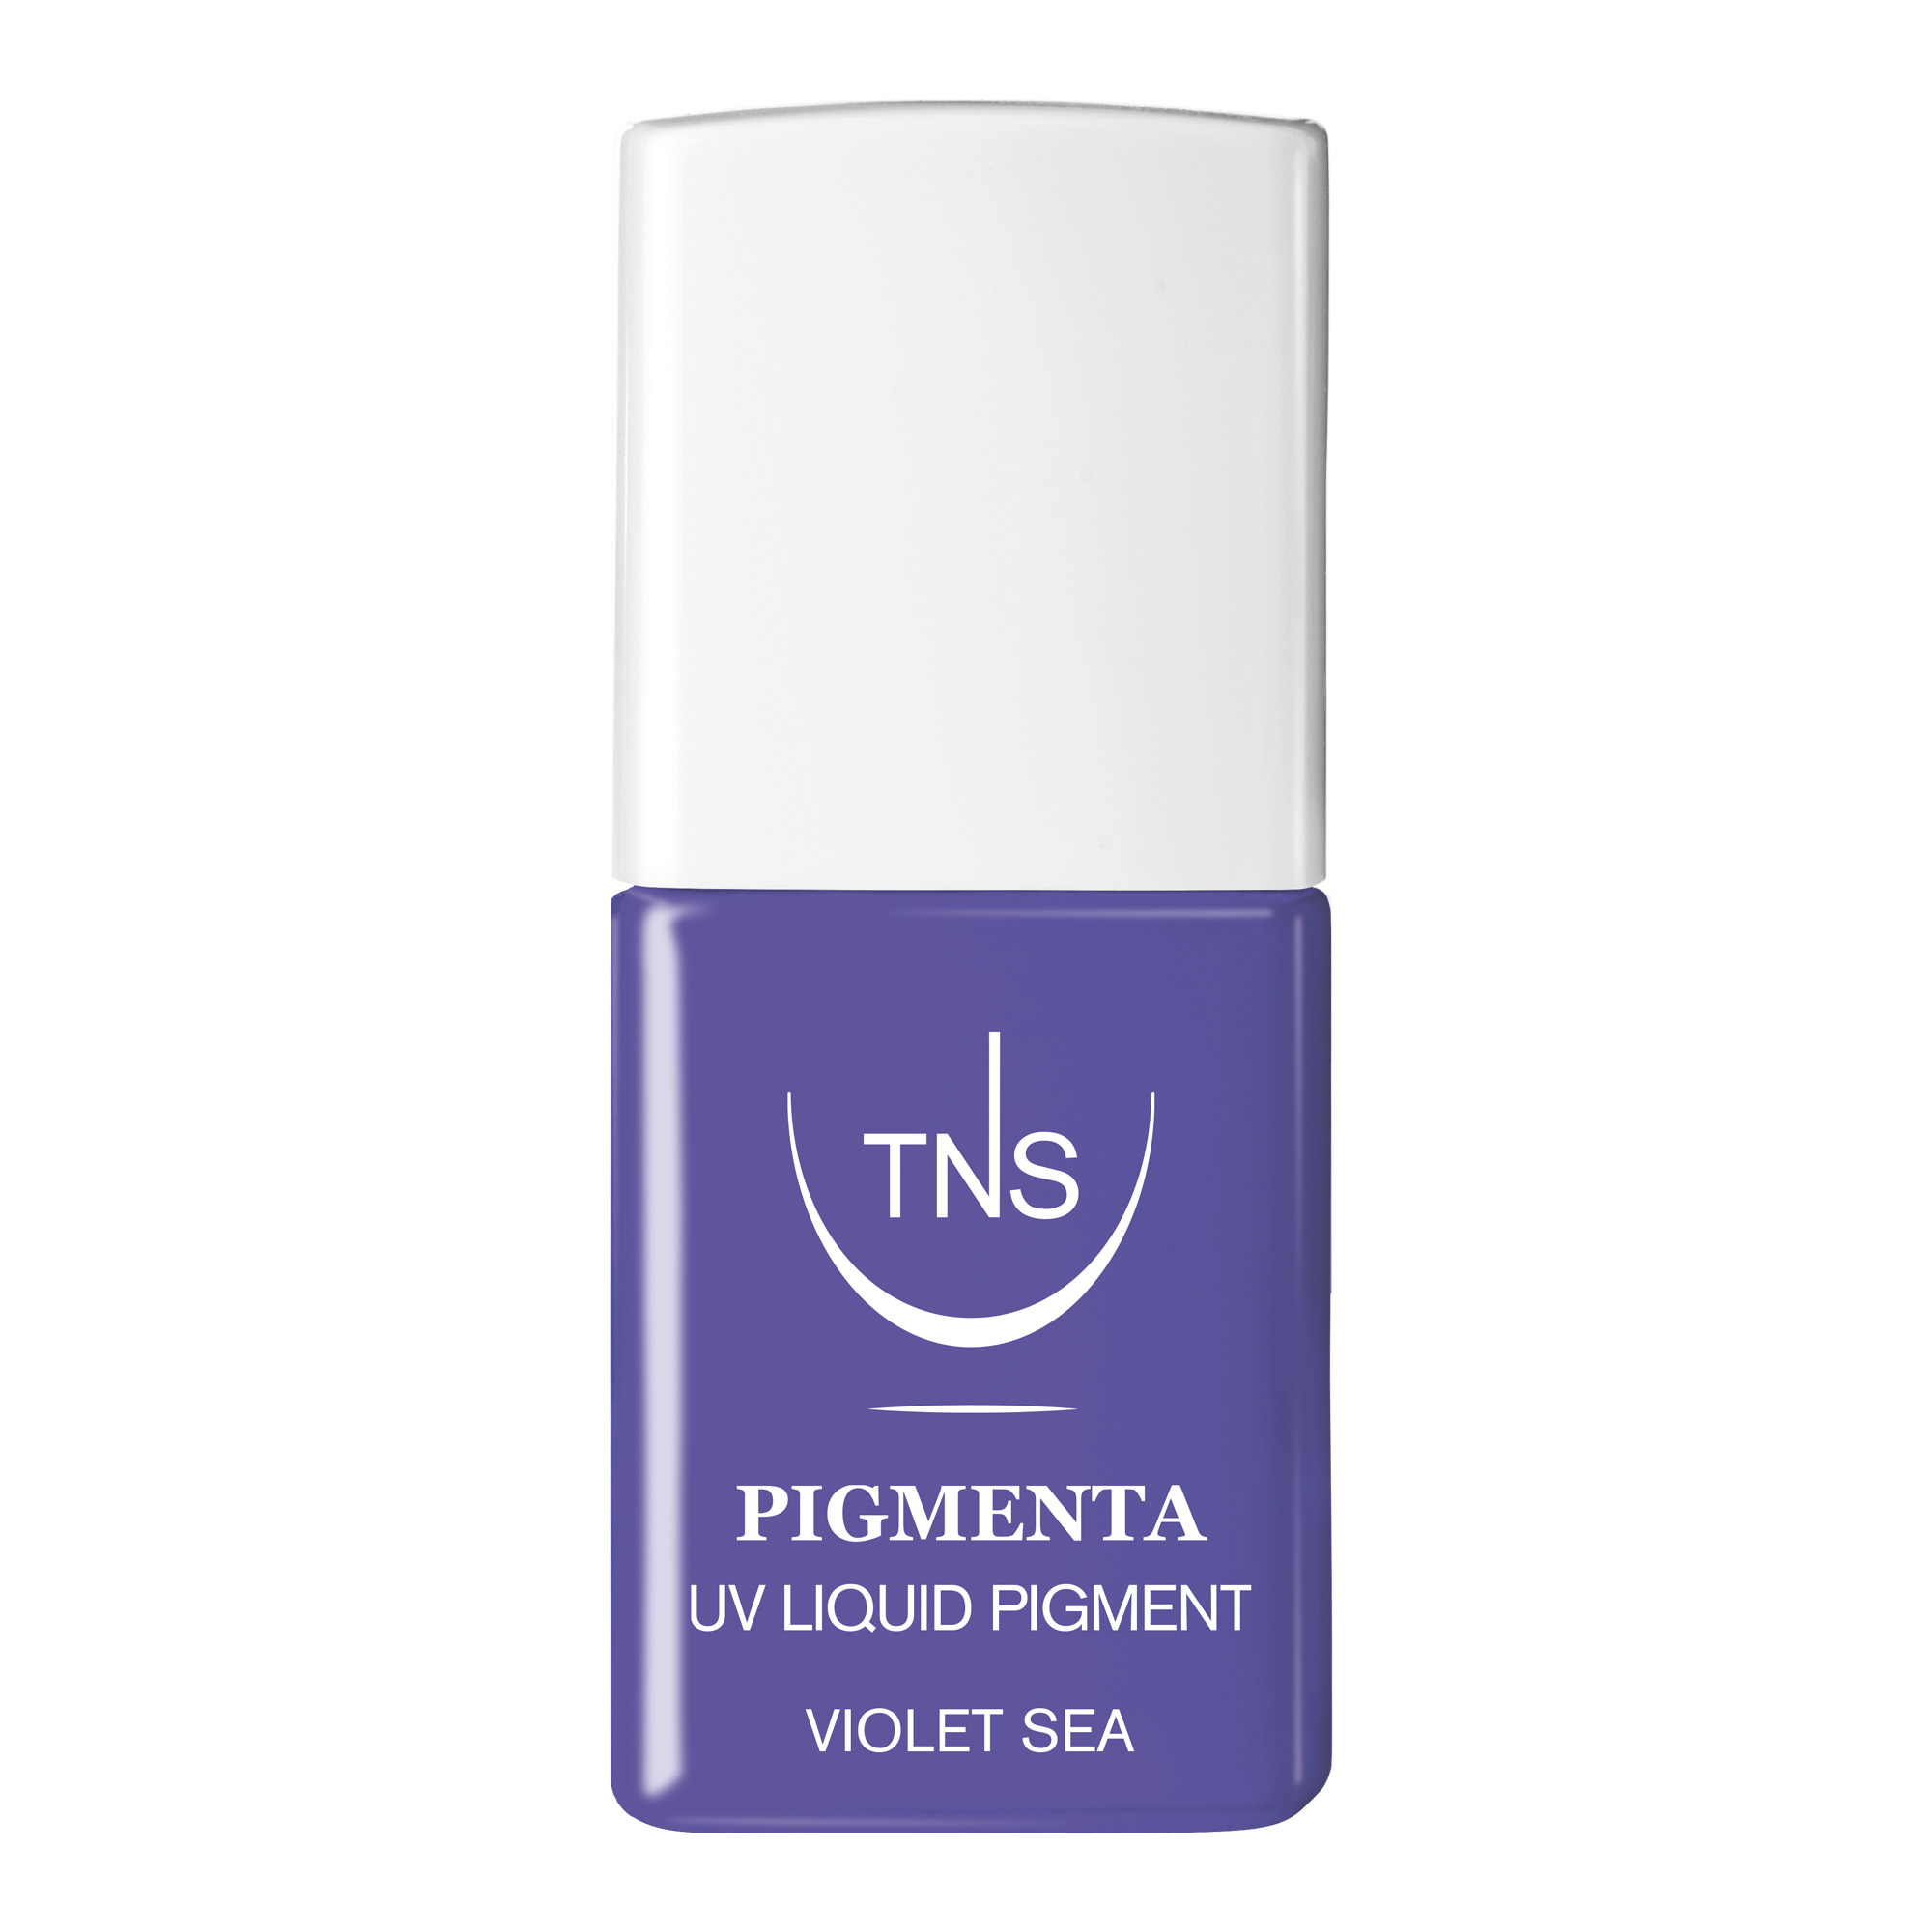 UV Liquid Pigment Violet Sea bright violet 10 ml Pigmenta TNS